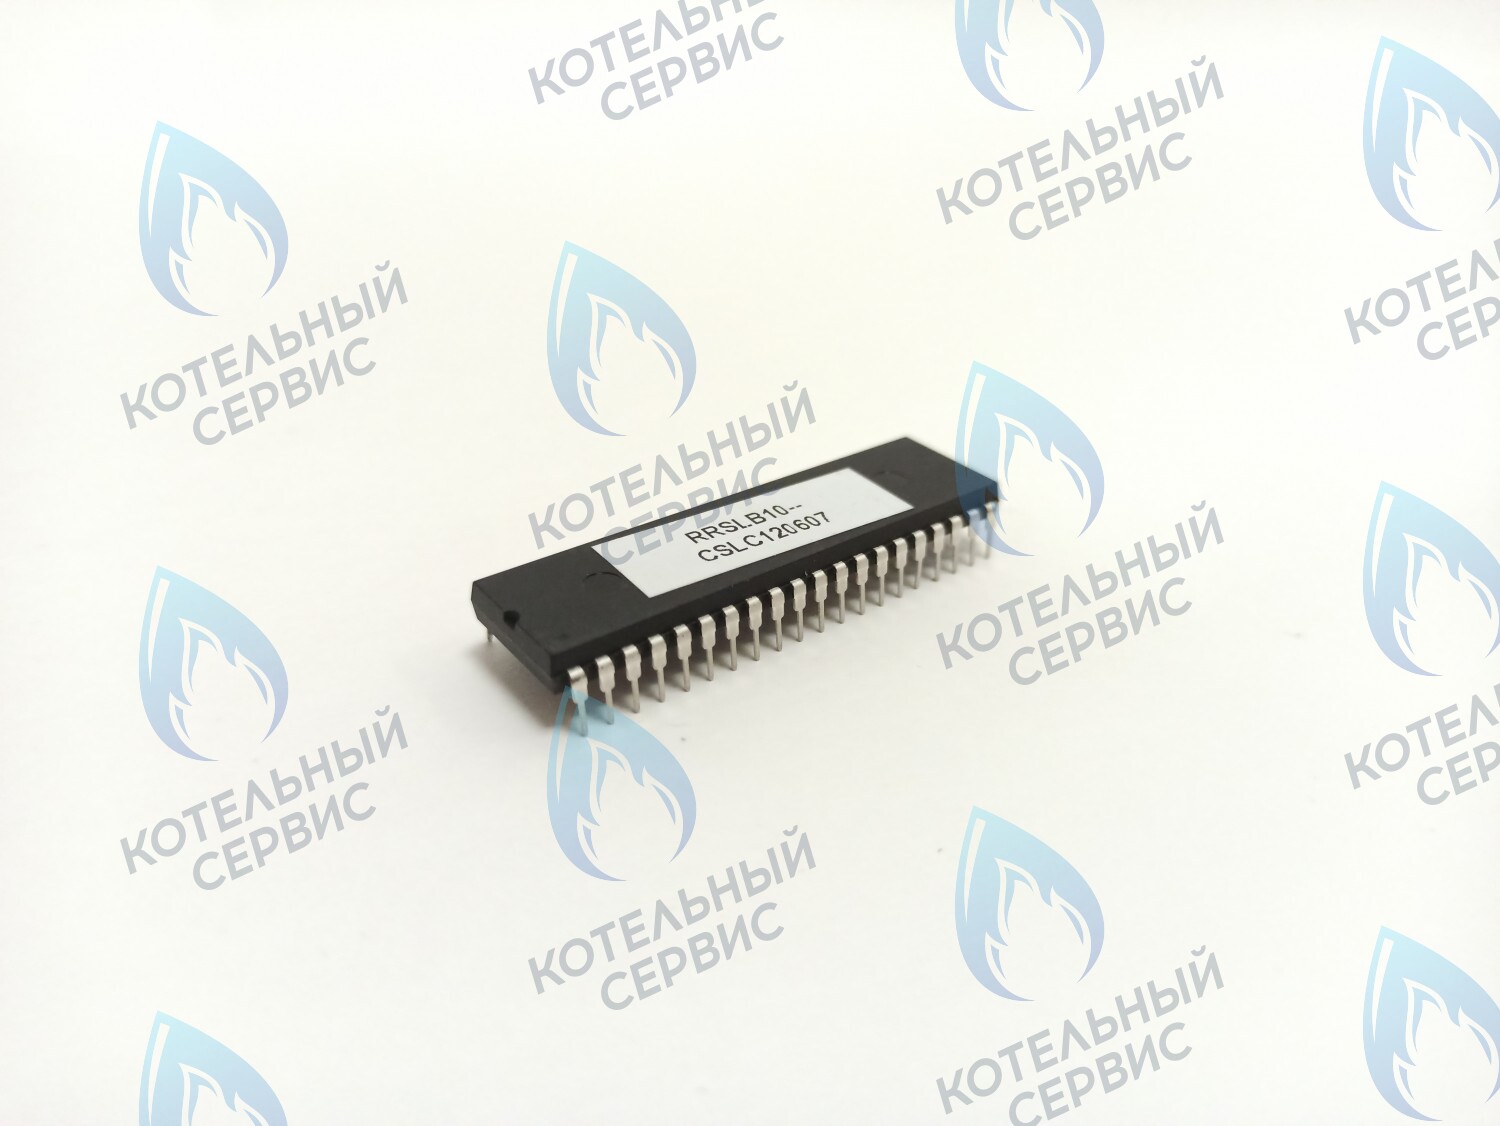 CB020-B10-845-SINGLE Процессор Electrolux Basic S 18/24/30 Fi (одноконтурный) газовый клапан SIT 845 RRSLB10-CSLC120607 (1310028B, AA04030025) 